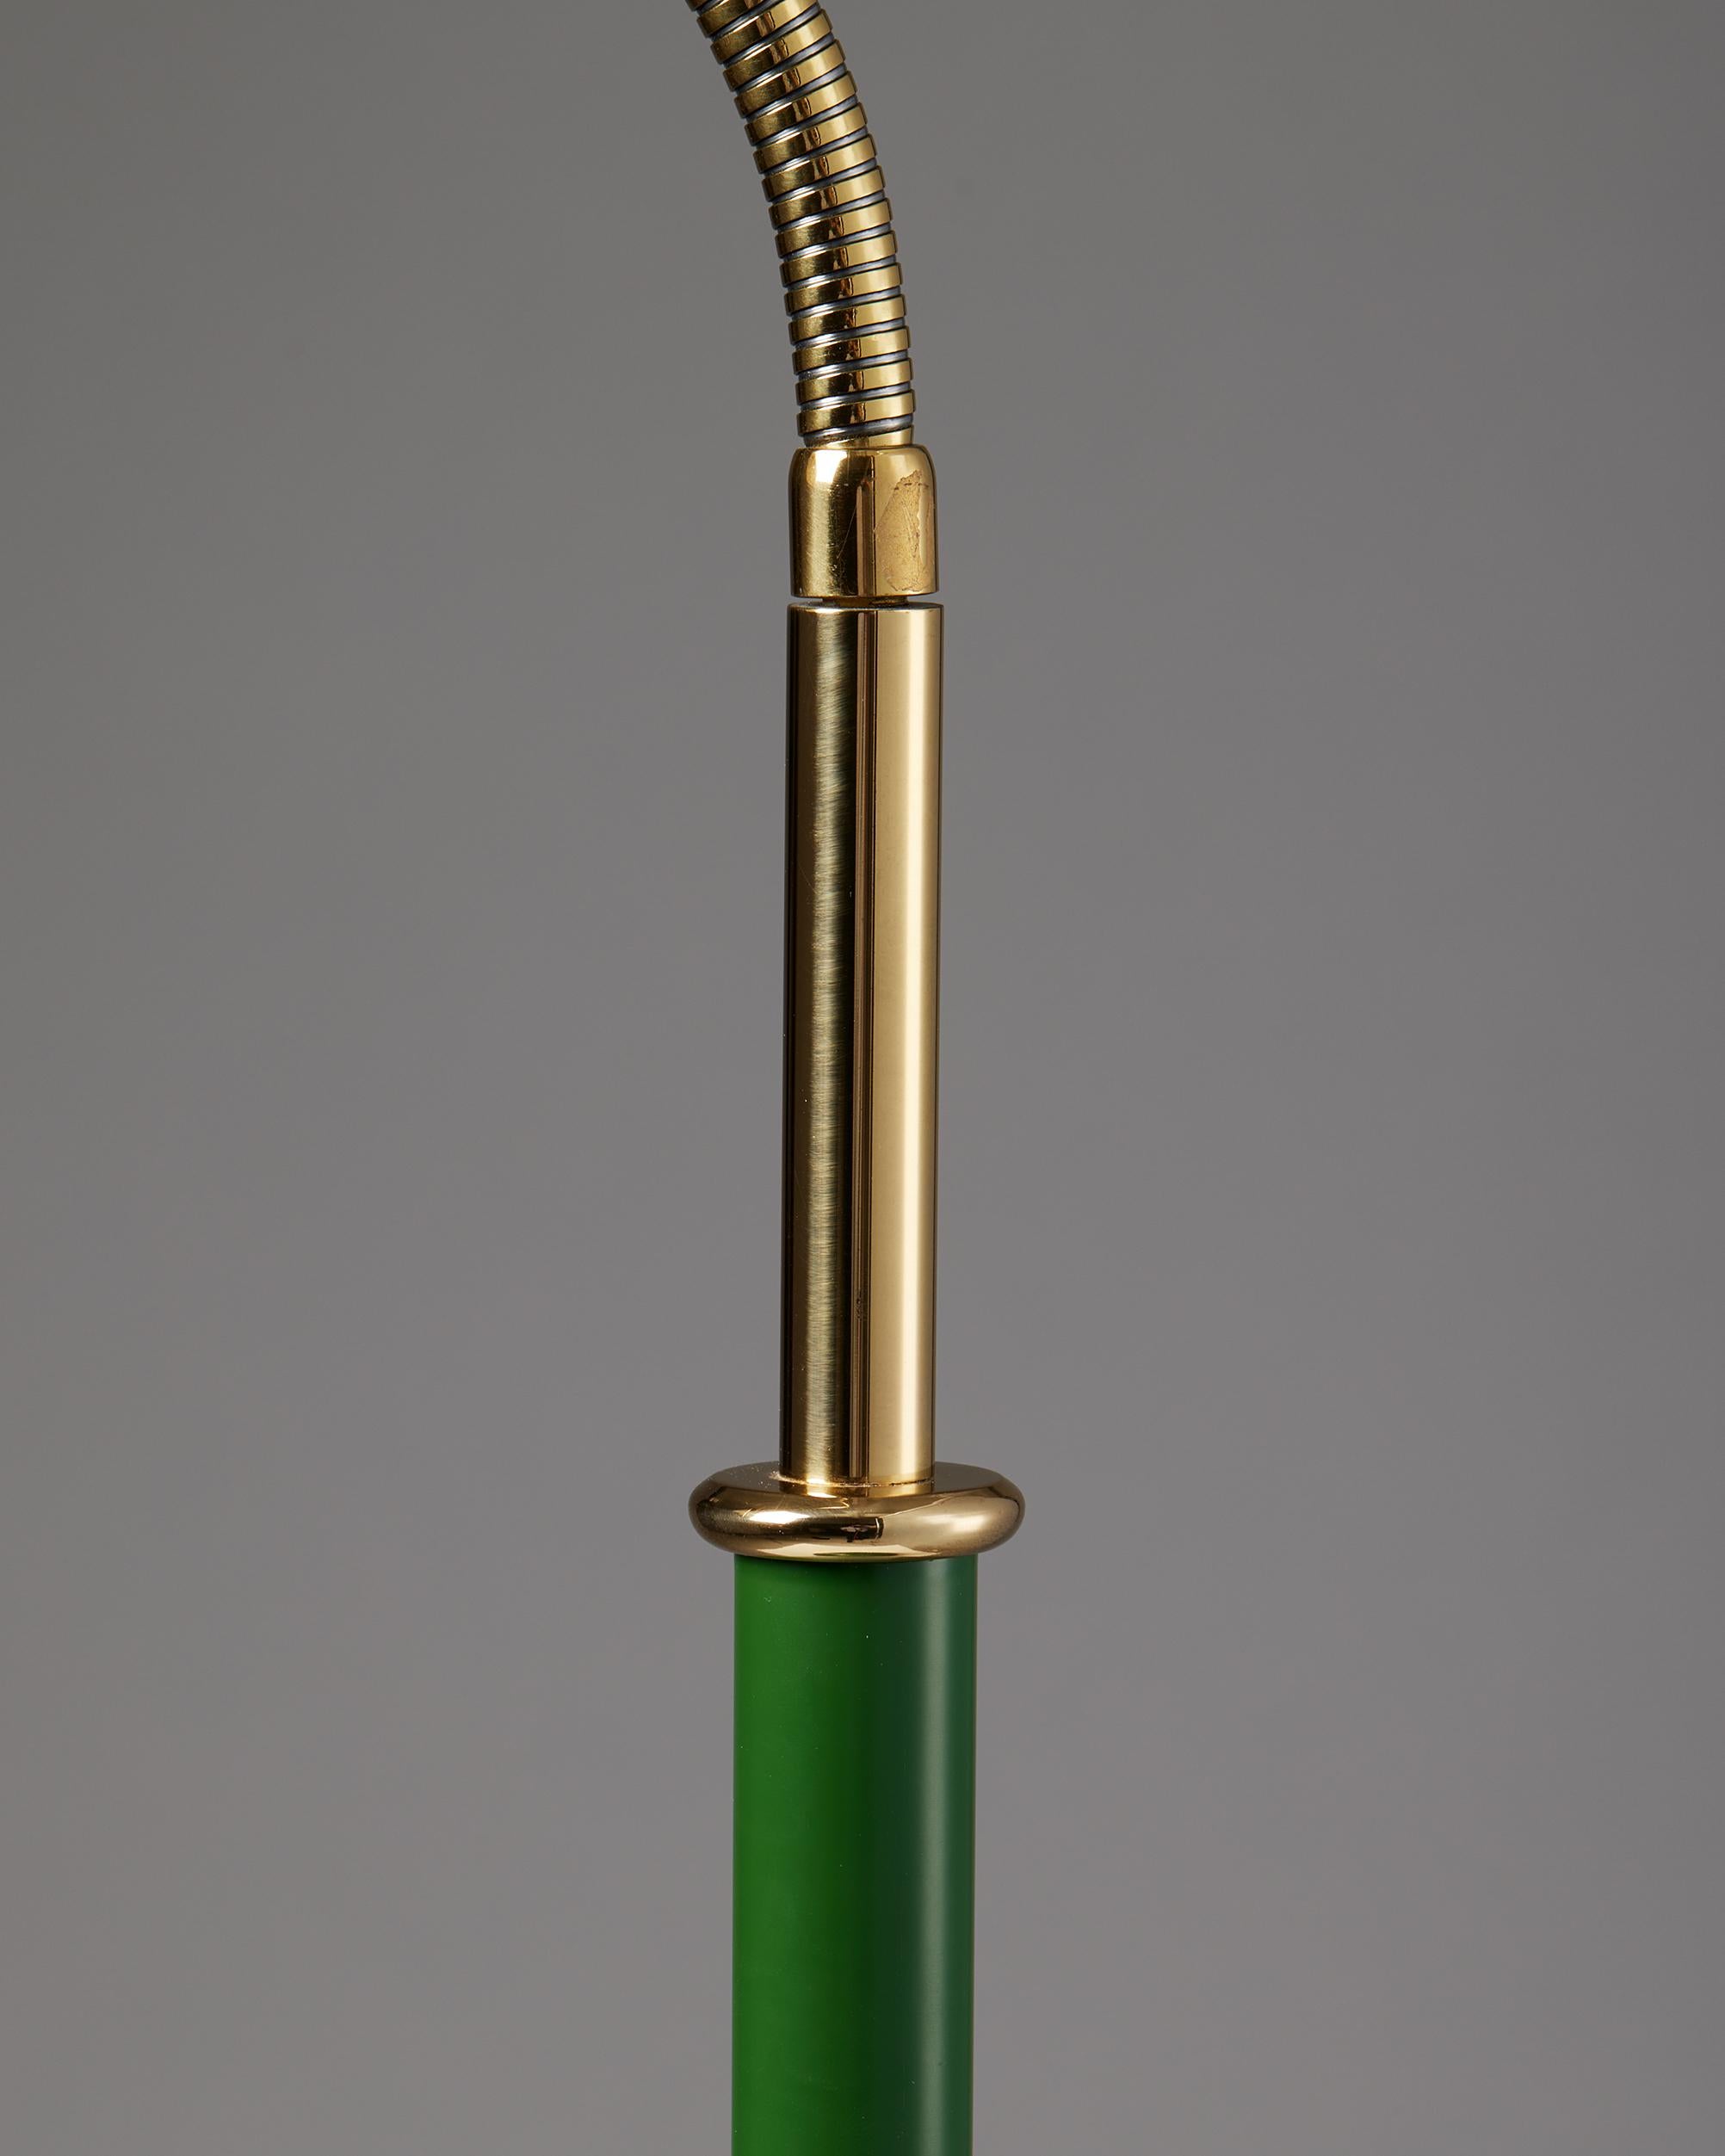 Brass Table Lamp Model 2434 Designed by Josef Frank for Svenskt Tenn, Sweden, 1939